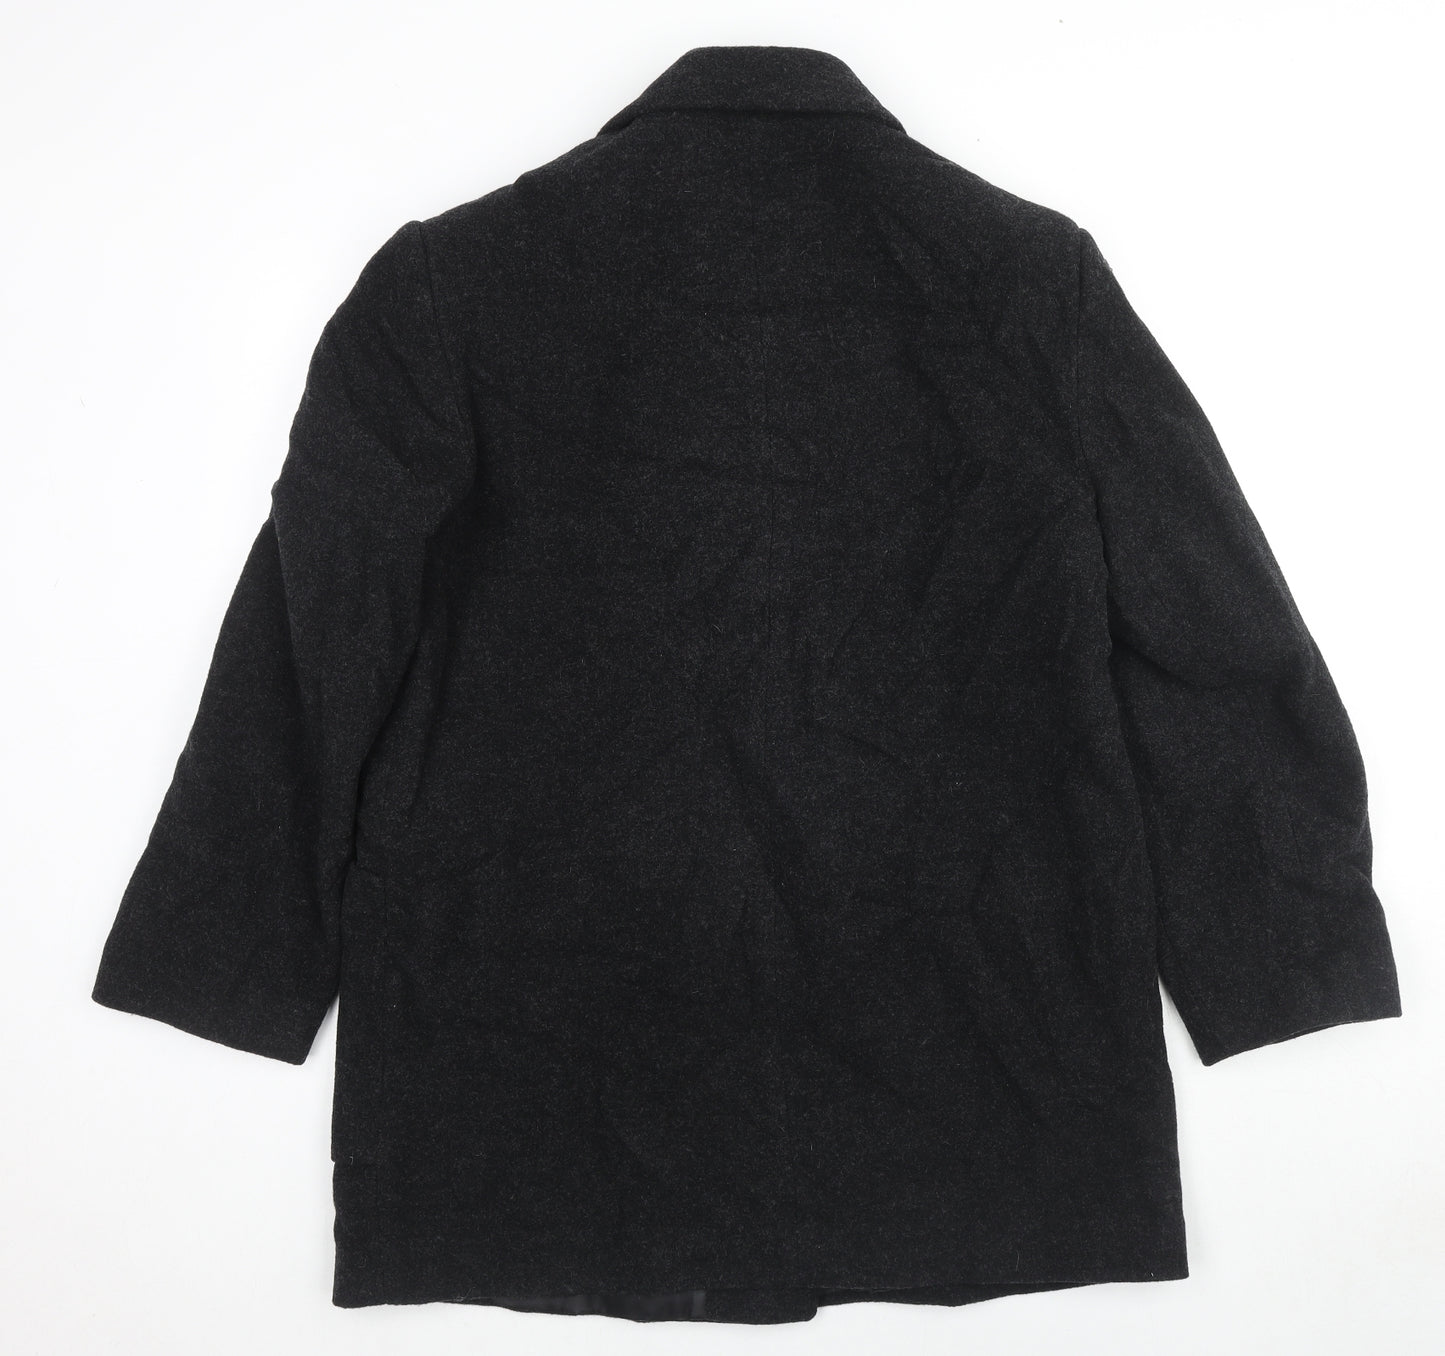 Astraka Womens Black Pea Coat Coat Size M Button